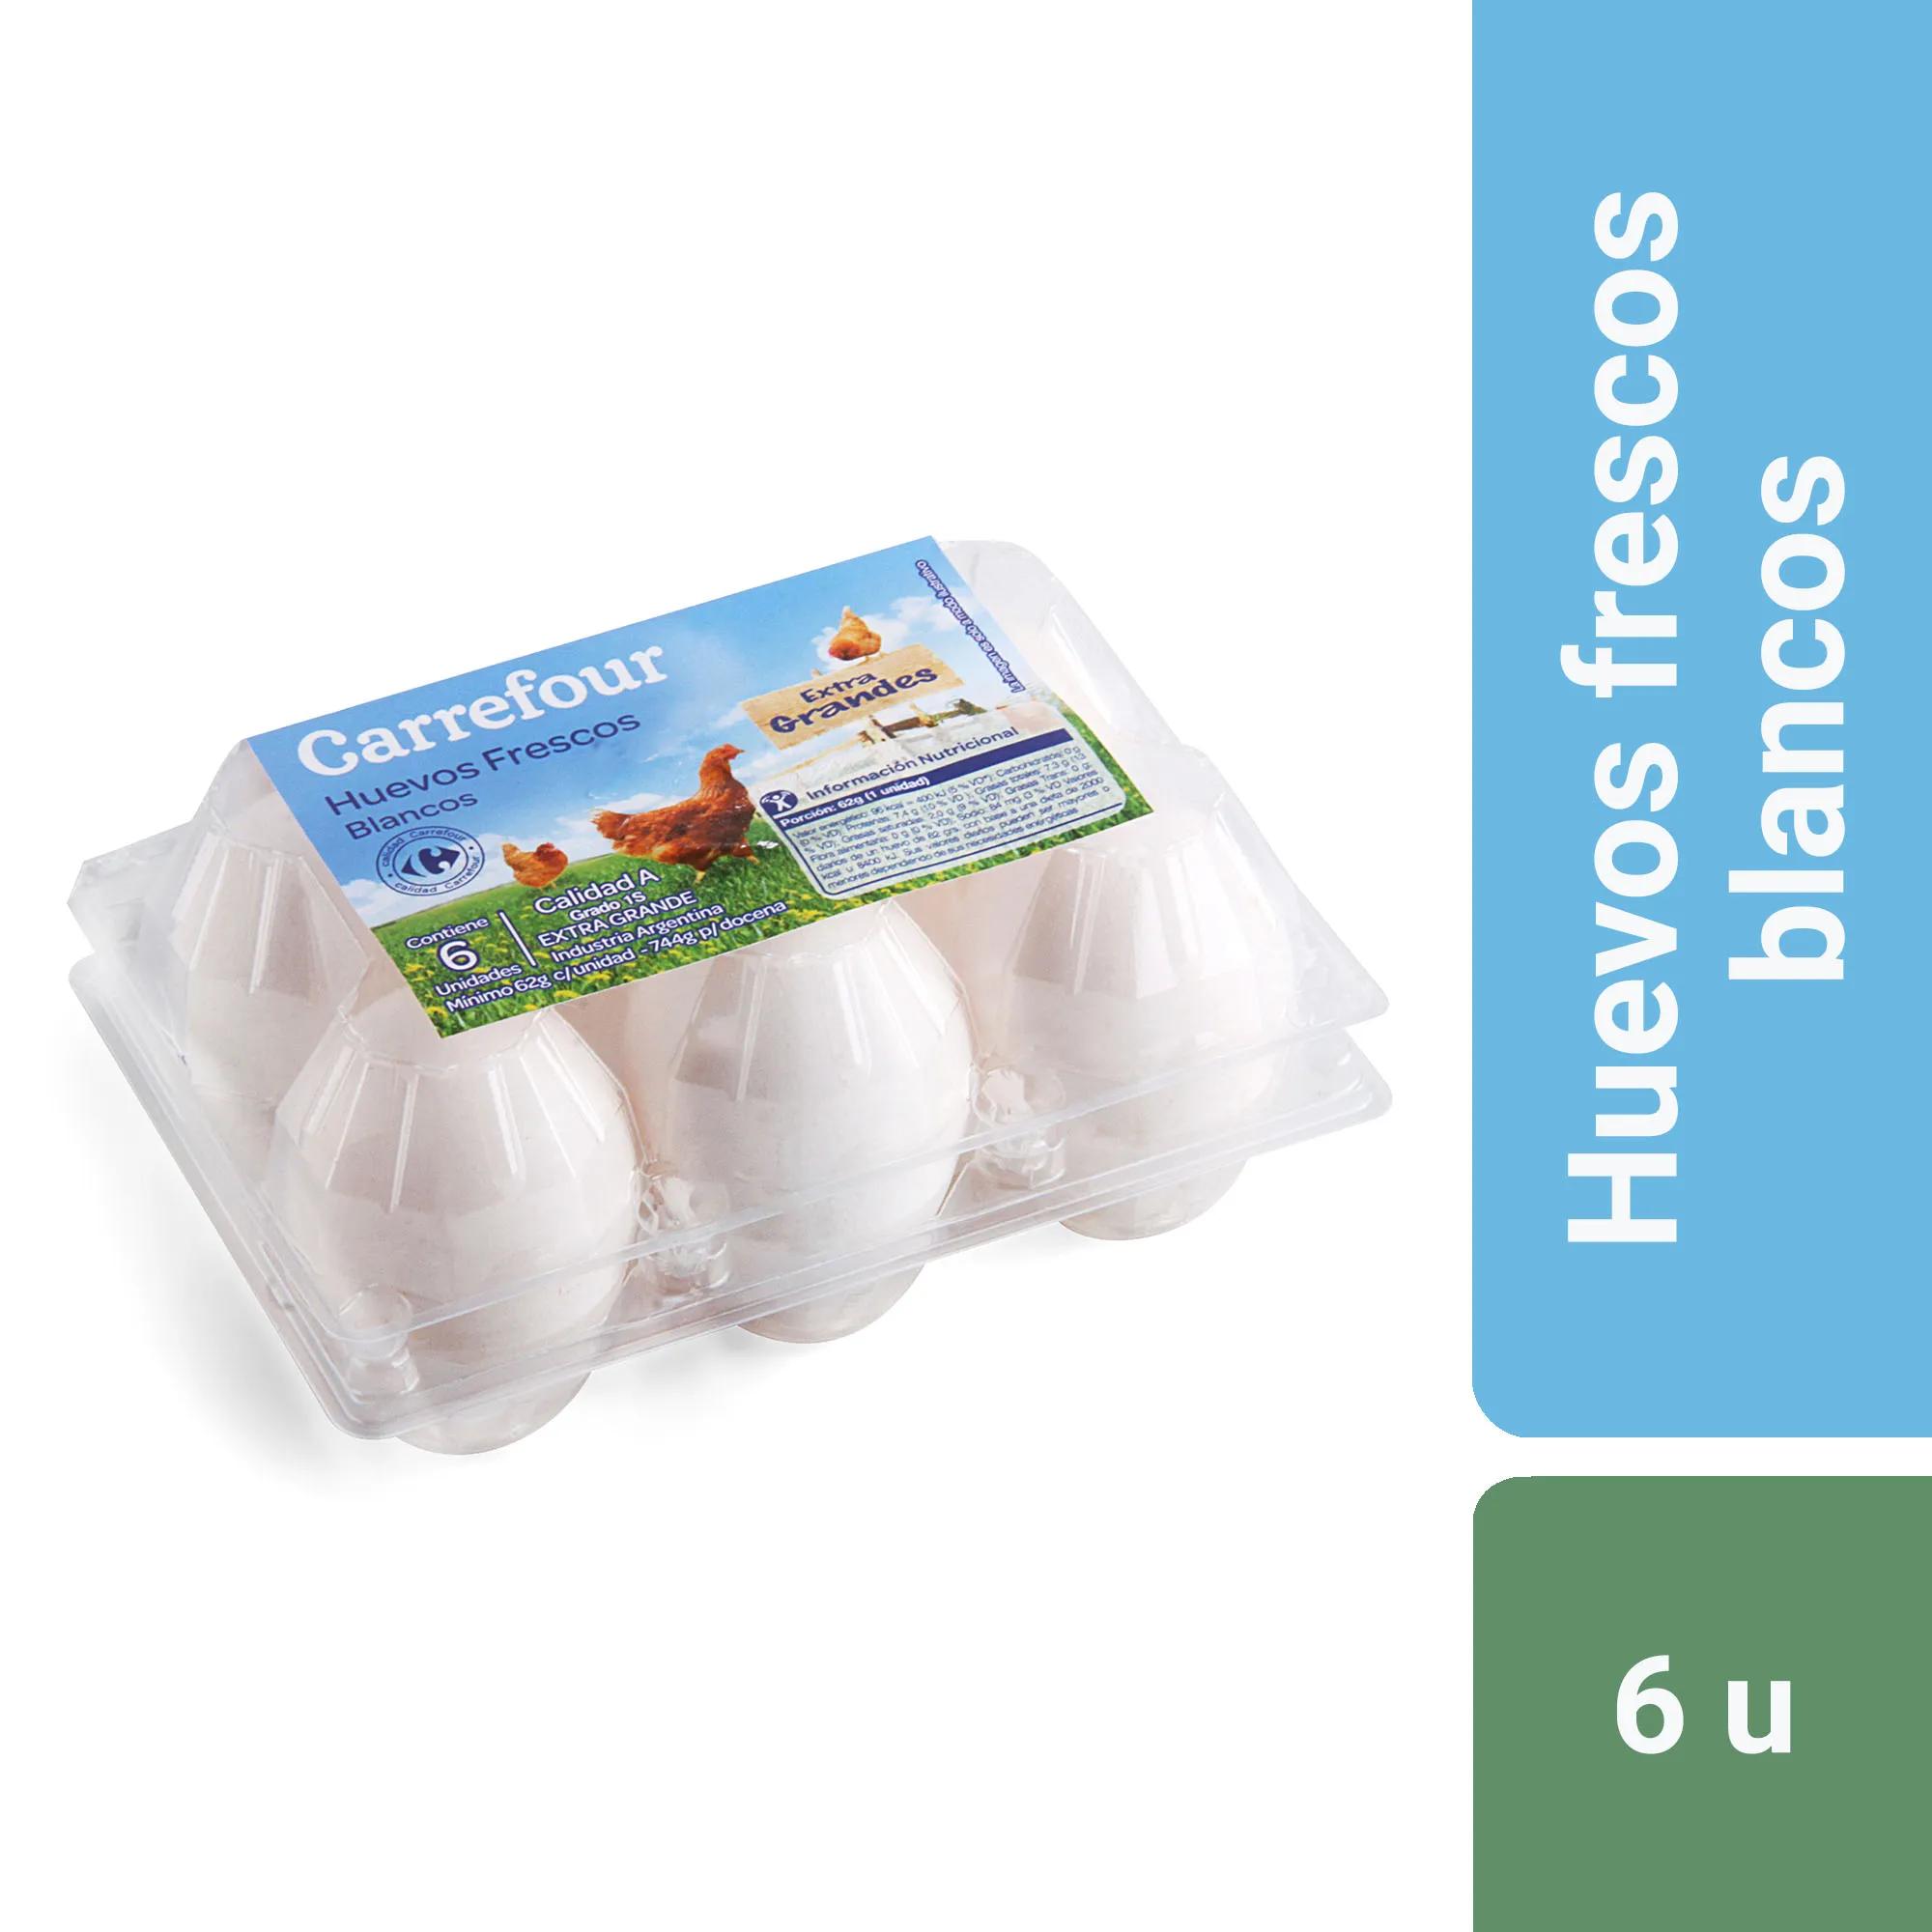 huevos de plastico argentina - Cómo se clasifican los huevos de acuerdo a su procedencia